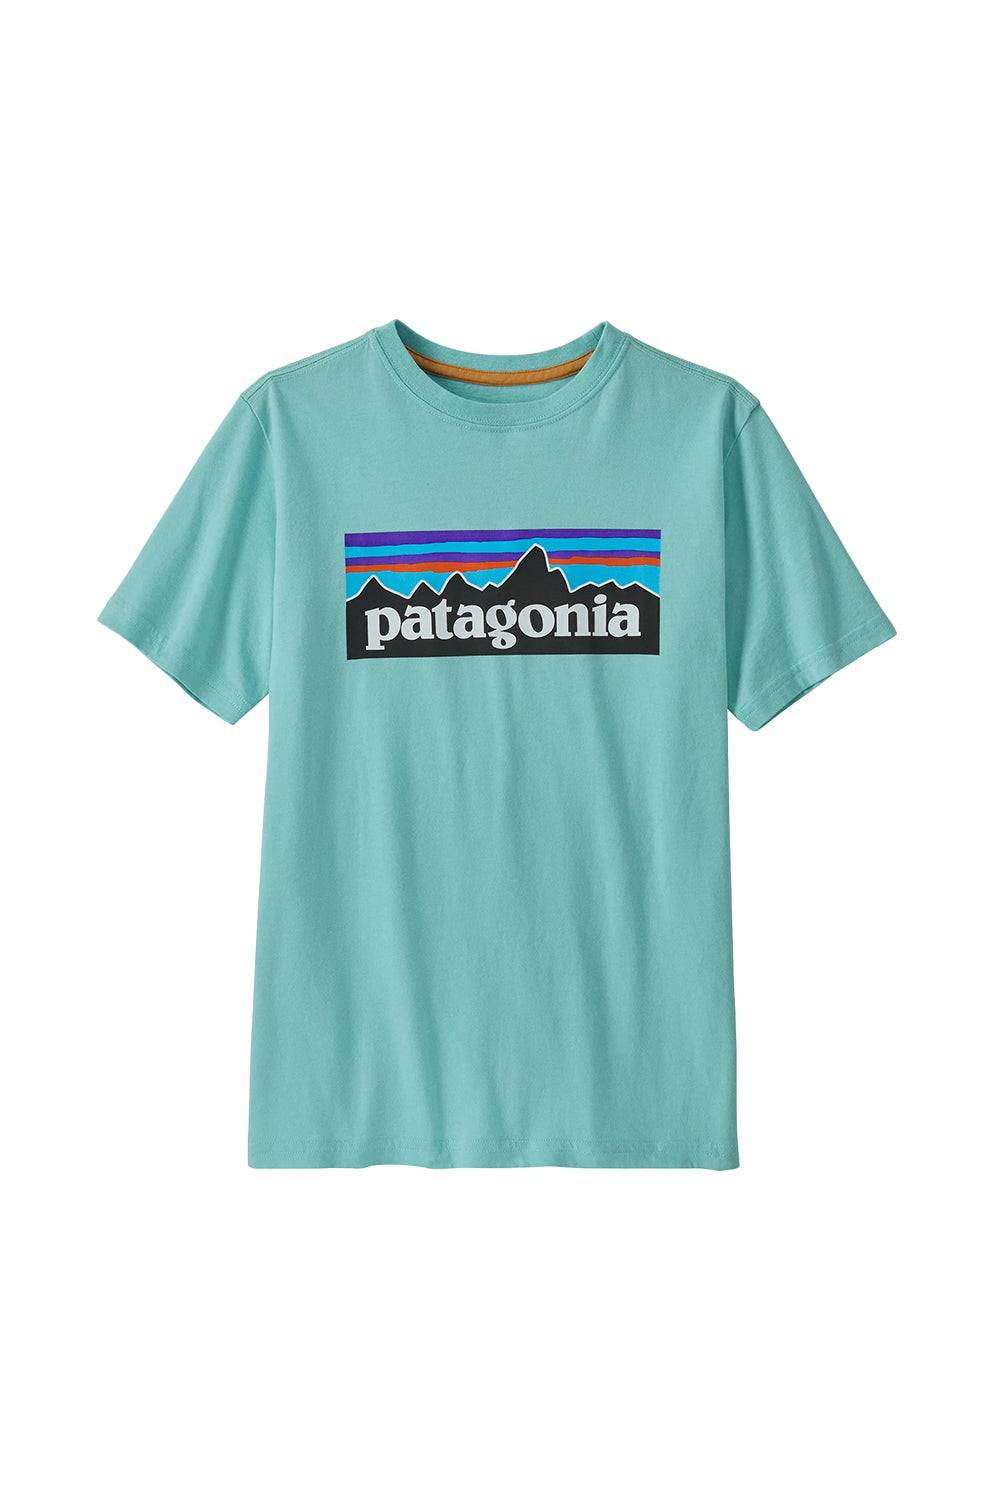 Patagonia Kids Regenerative Organic Certified Cotton P-6 Logo T-Shirt